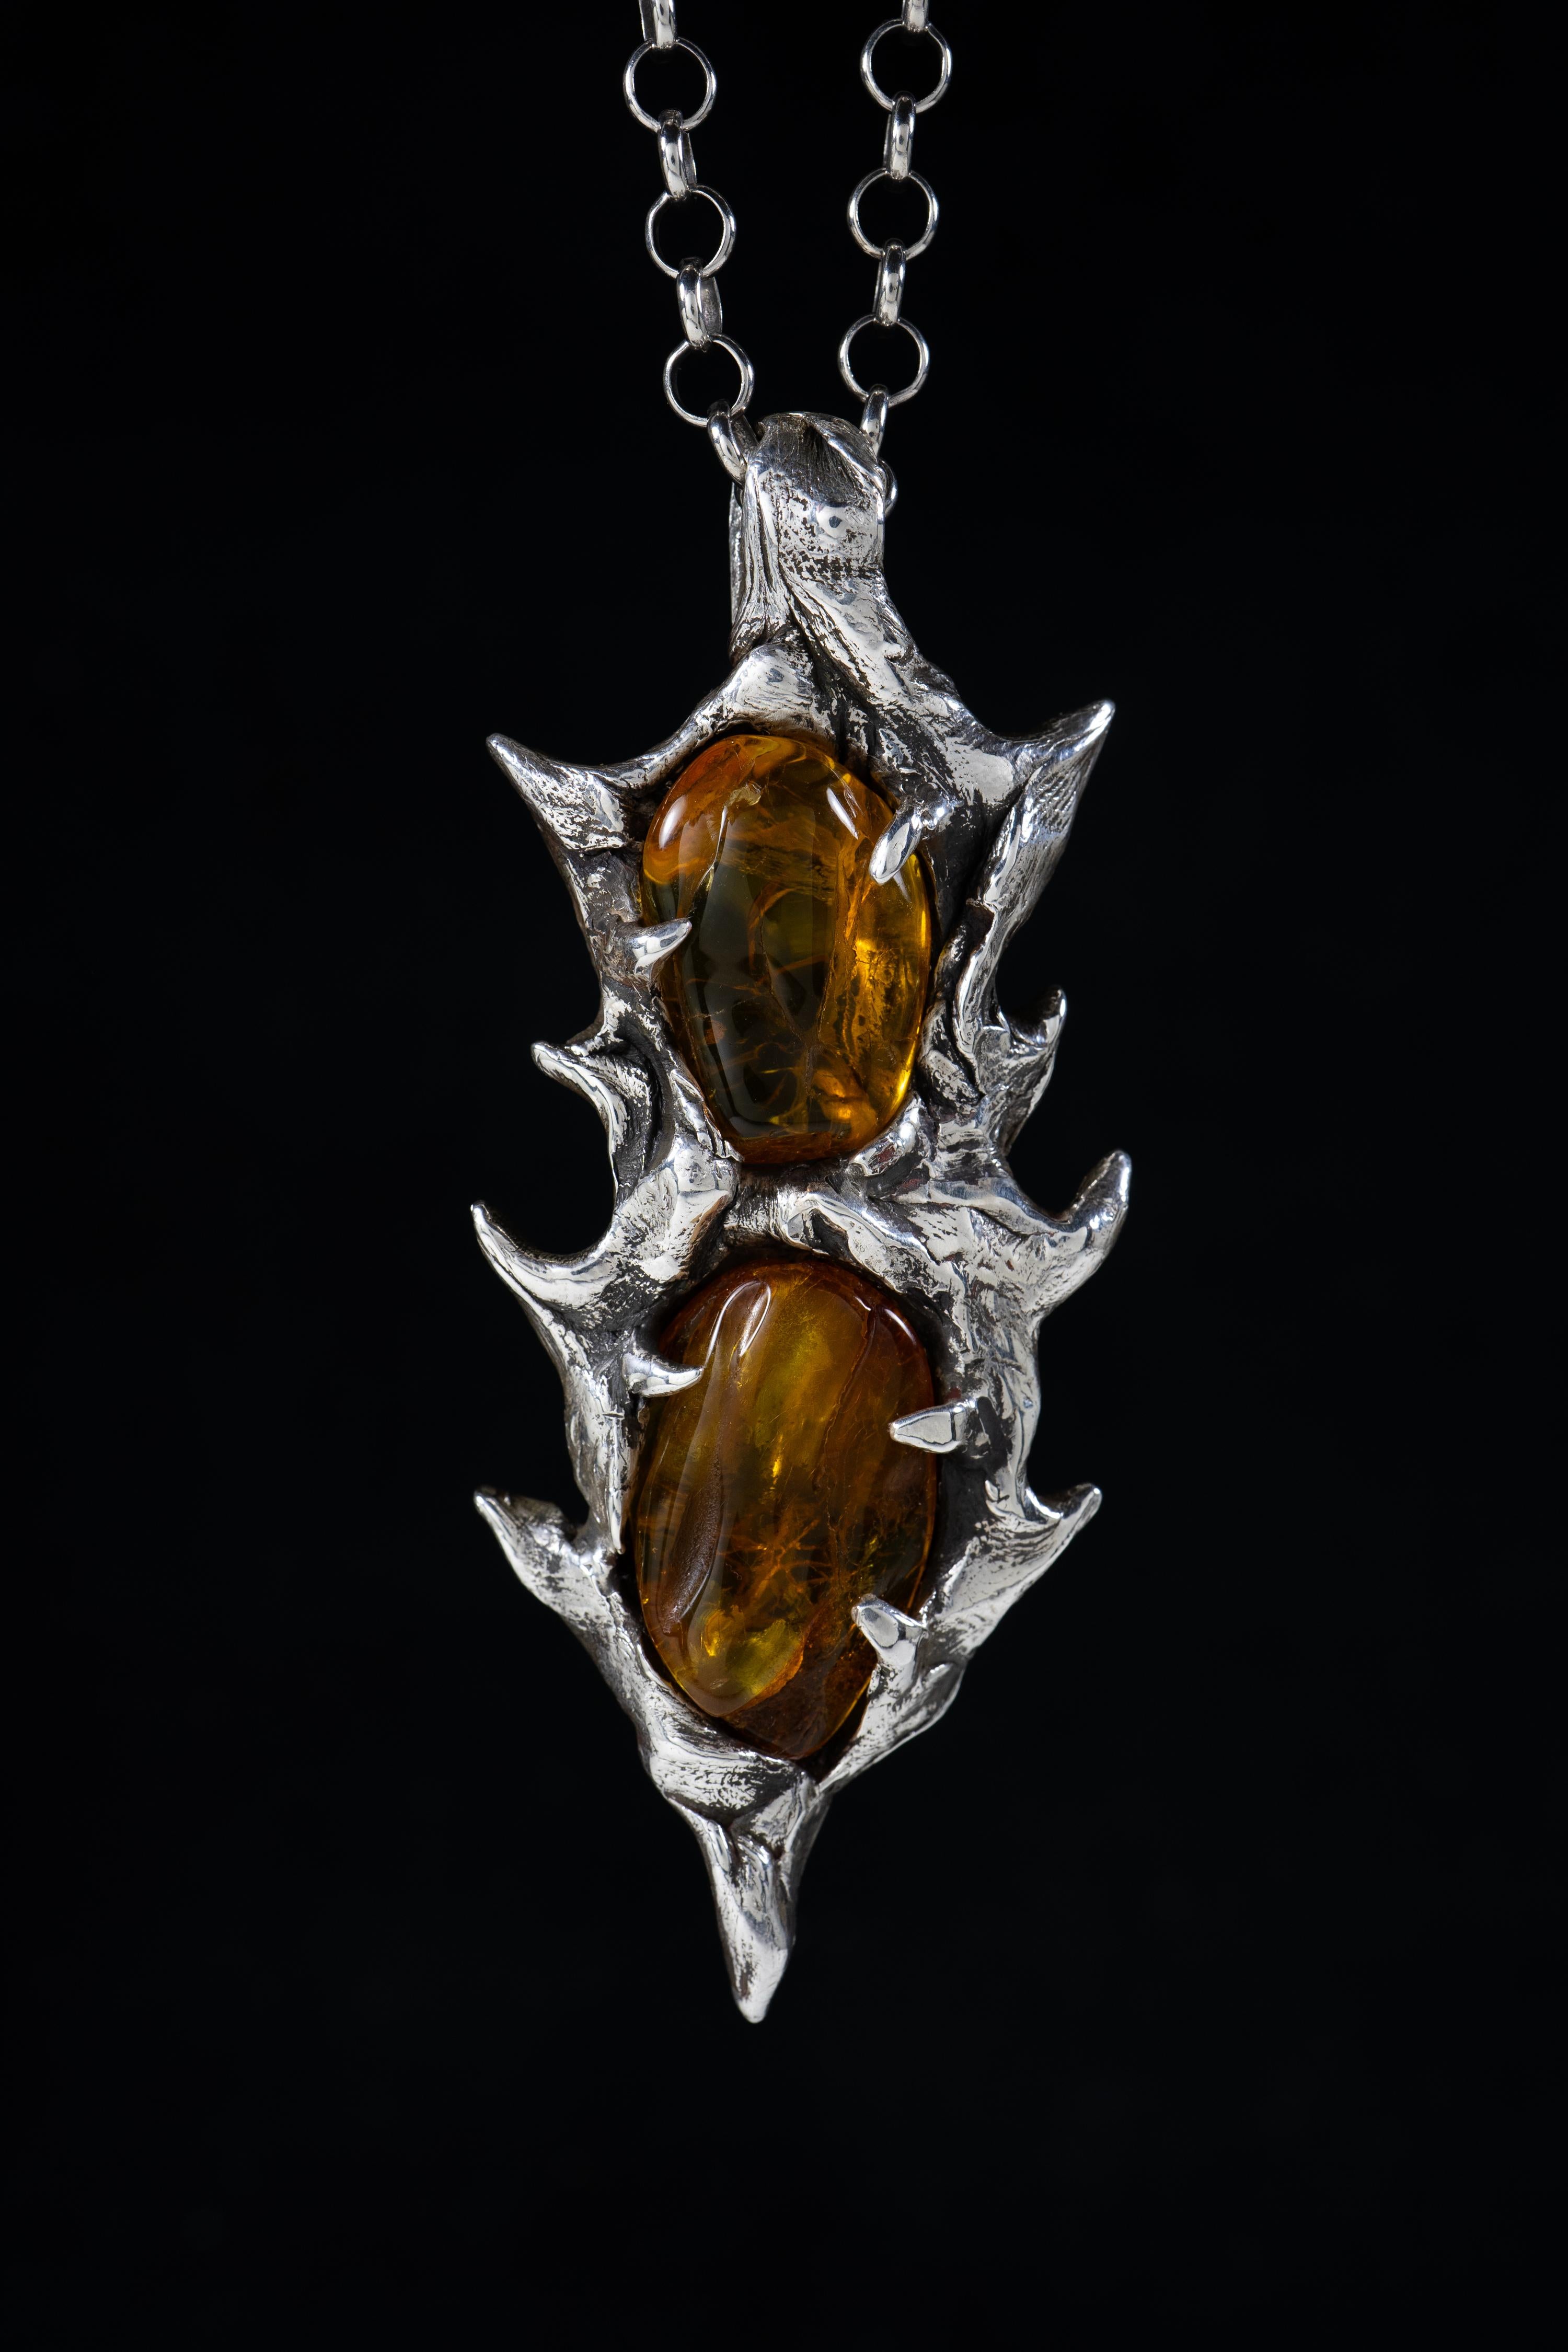 La Lance de l'immortalité est un pendentif unique de Ken Fury, sculpté et coulé à la main dans de l'argent sterling avec des pierres naturelles d'ambre baltique de Pologne.

Taille de la pièce : 92mm x 37mm

Signé à la main.

Une chaîne en argent